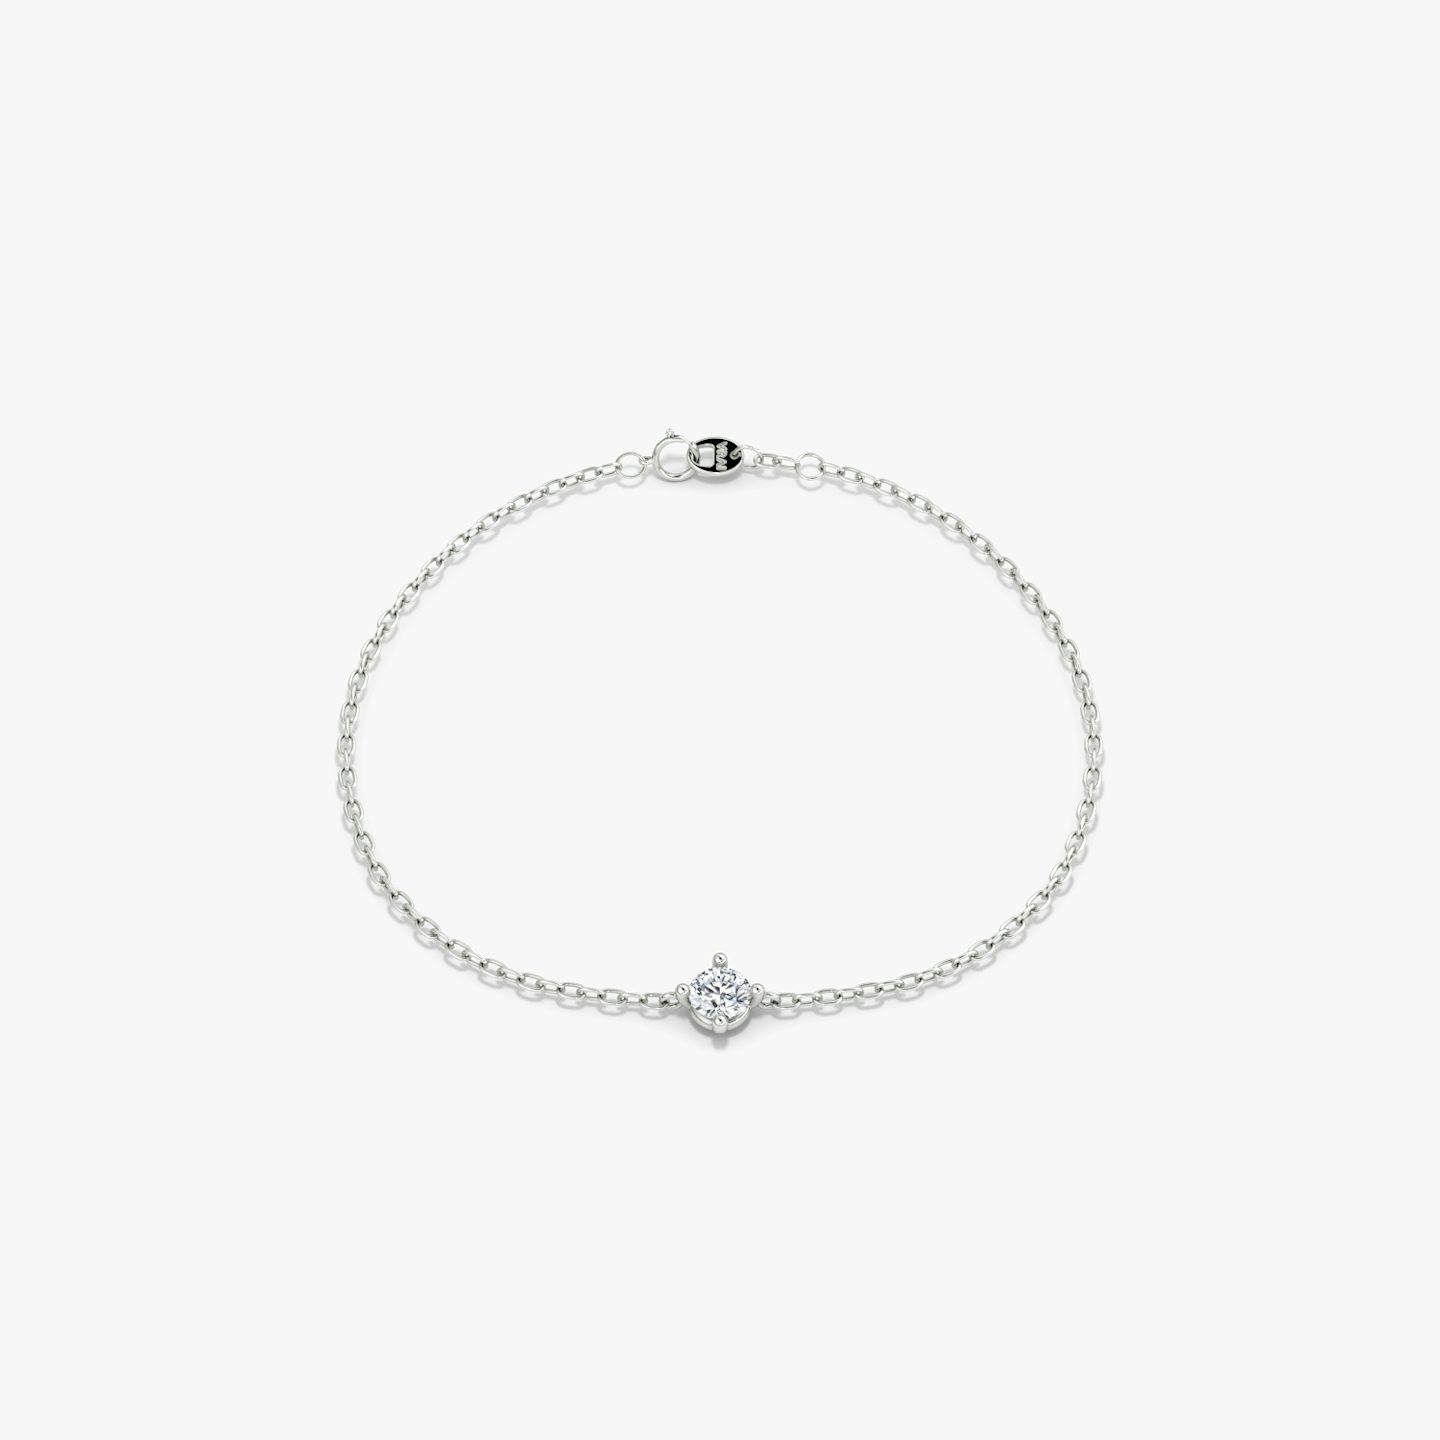 Bracelet Petite Solitaire | Rond Brillant | 14k | Or blanc 18 carats | Longueur de la chaîne: 6.5-7